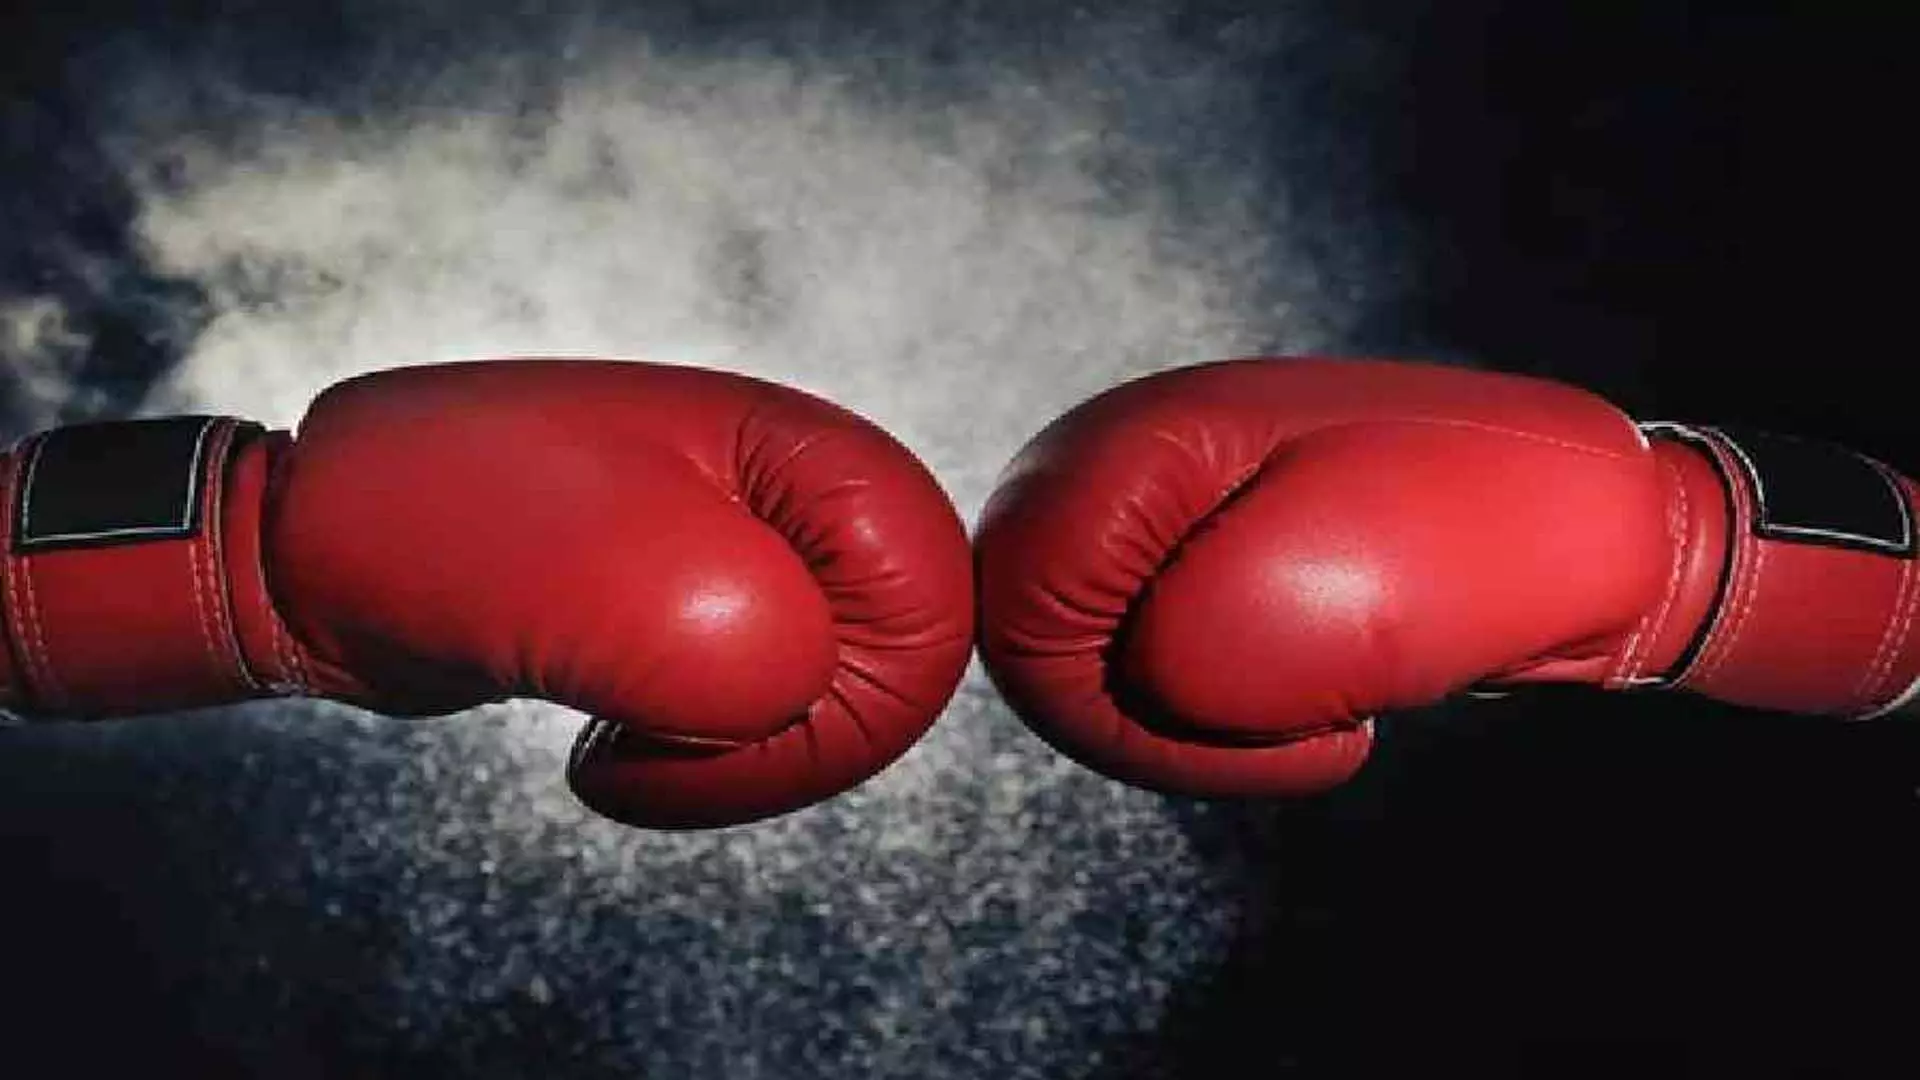 International Boxing Association: भारत आईओसी द्वारा निलंबित: अंतरराष्ट्रीय मुक्केबाजी संघ से अलग होकर विश्व मुक्केबाजी संघ में शामिल